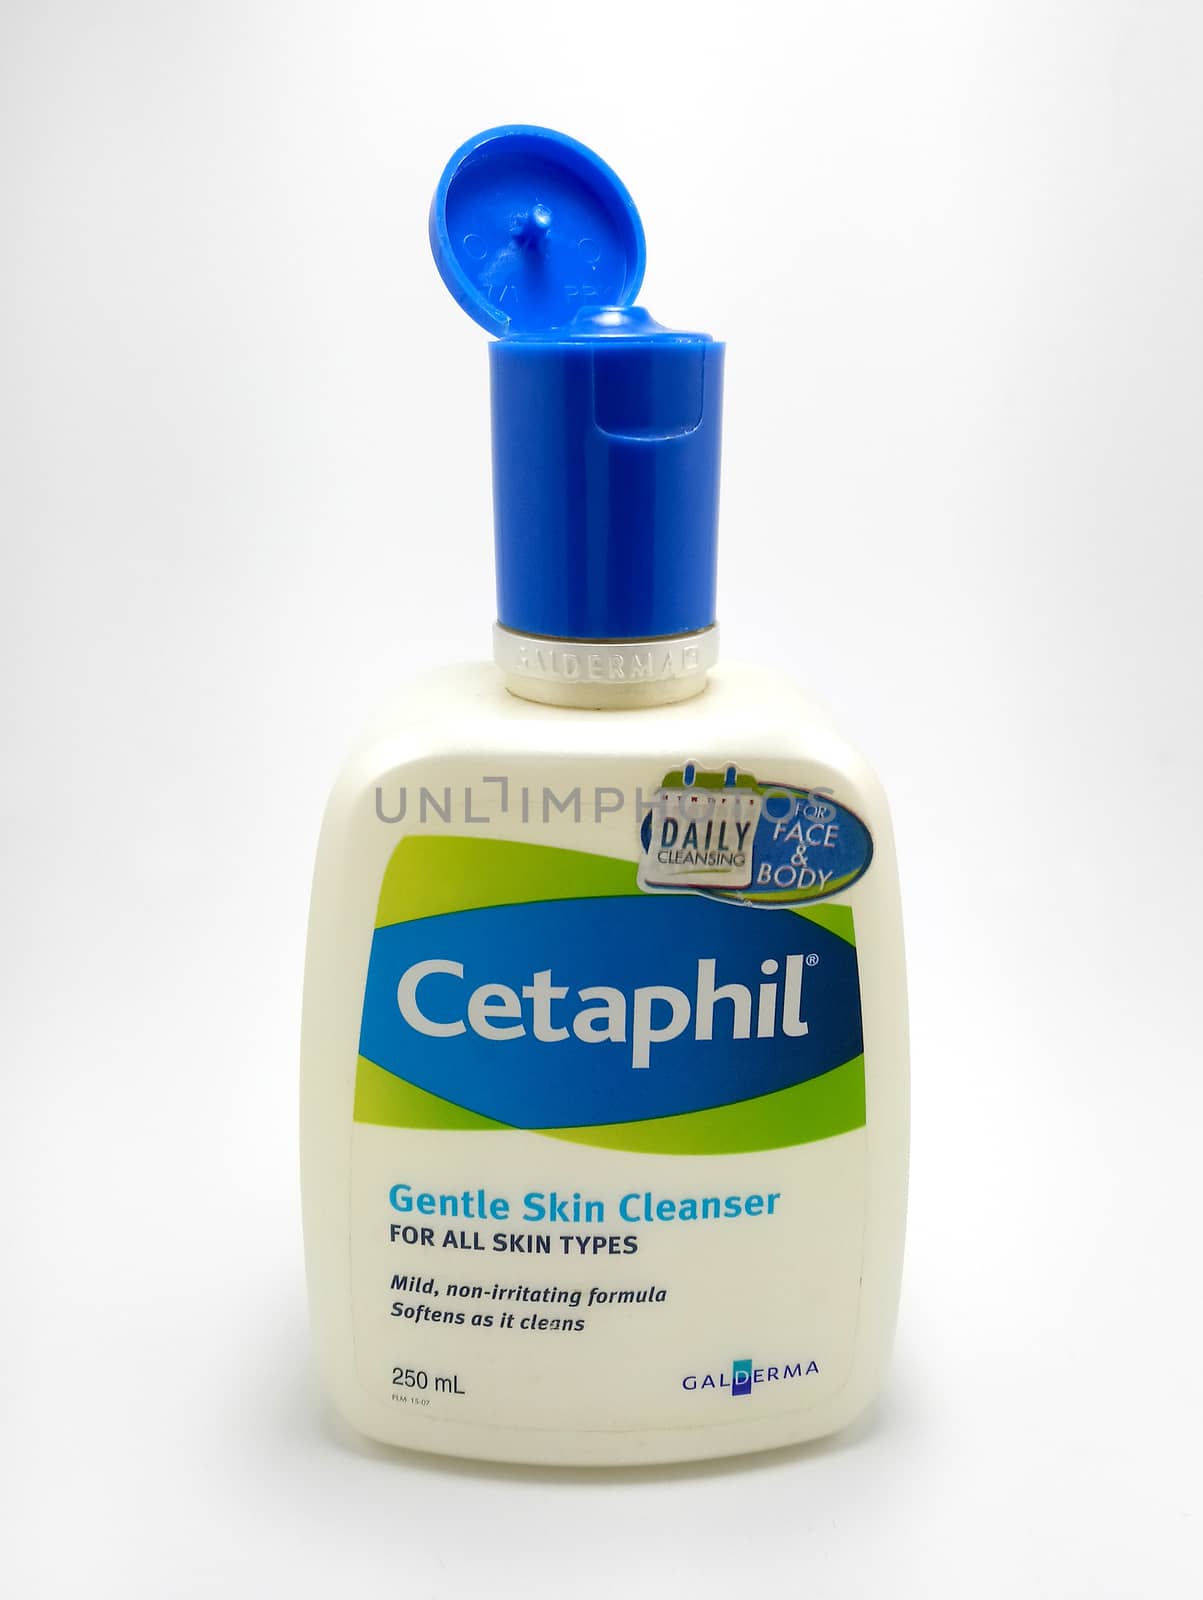 MANILA, PH - JUNE 23 - Cetaphil gentle skin cleanser on June 23, 2020 in Manila, Philippines.